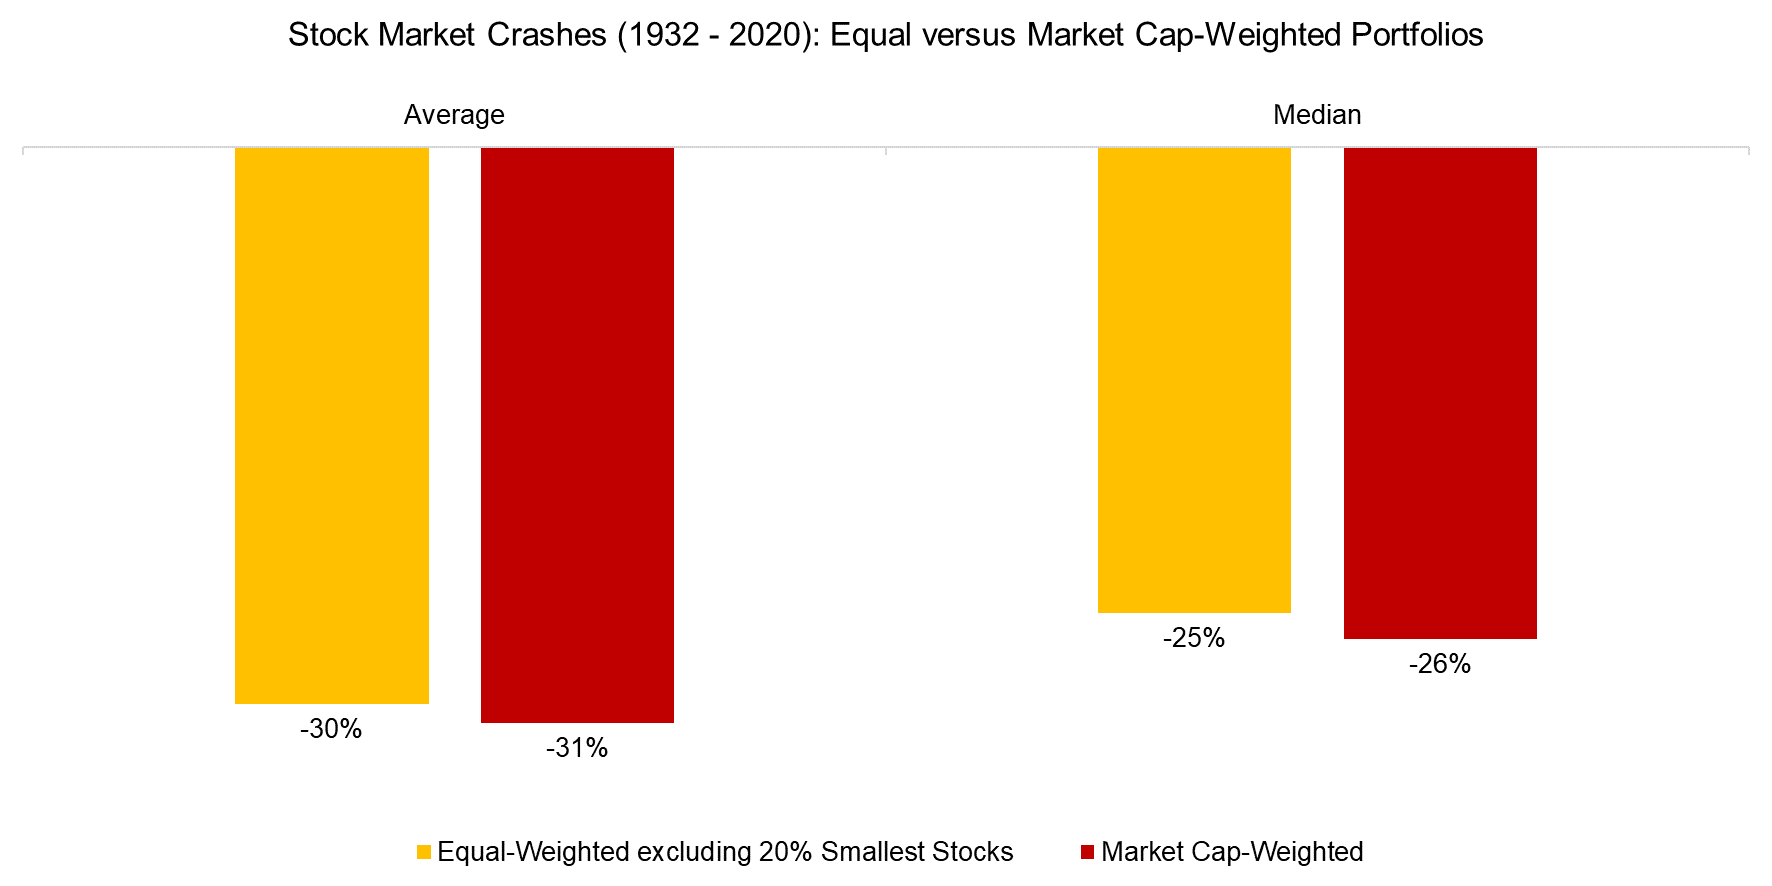 Stock Market Crashes (1932 - 2020) Equal versus Market Cap-Weighted Portfolios